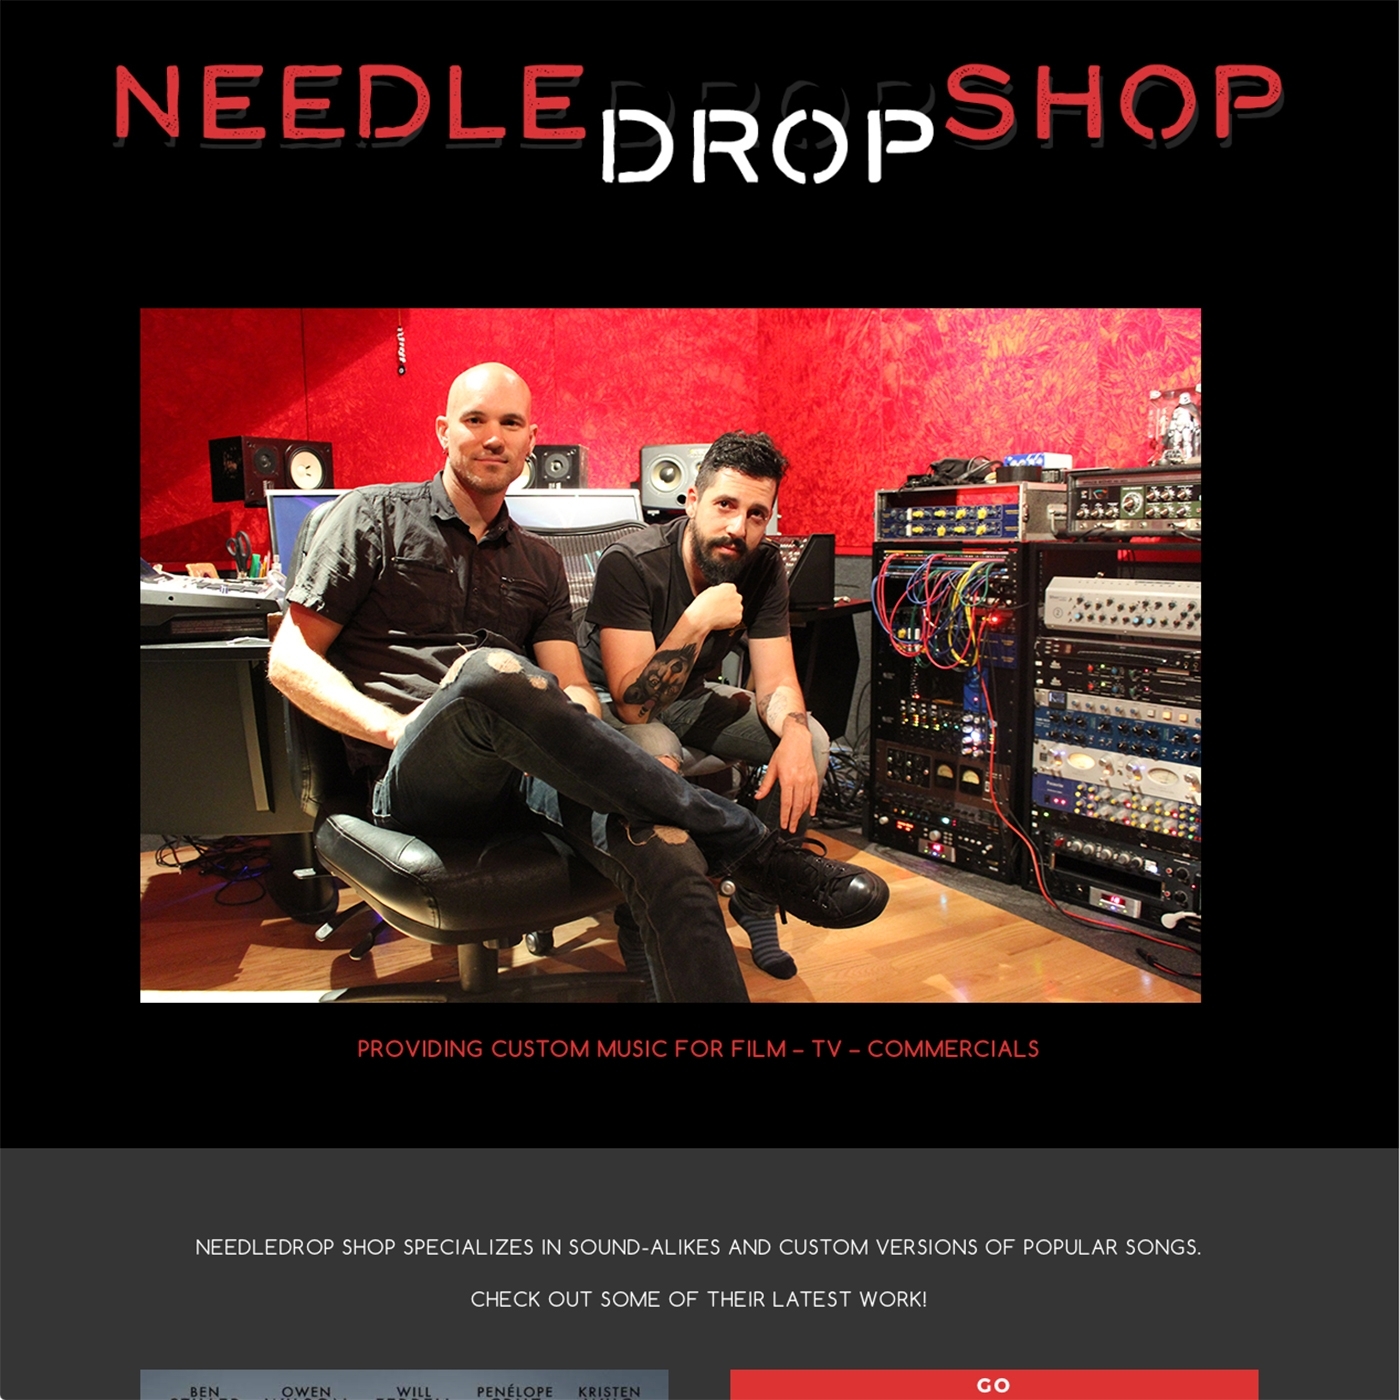 www.needledropshop.com